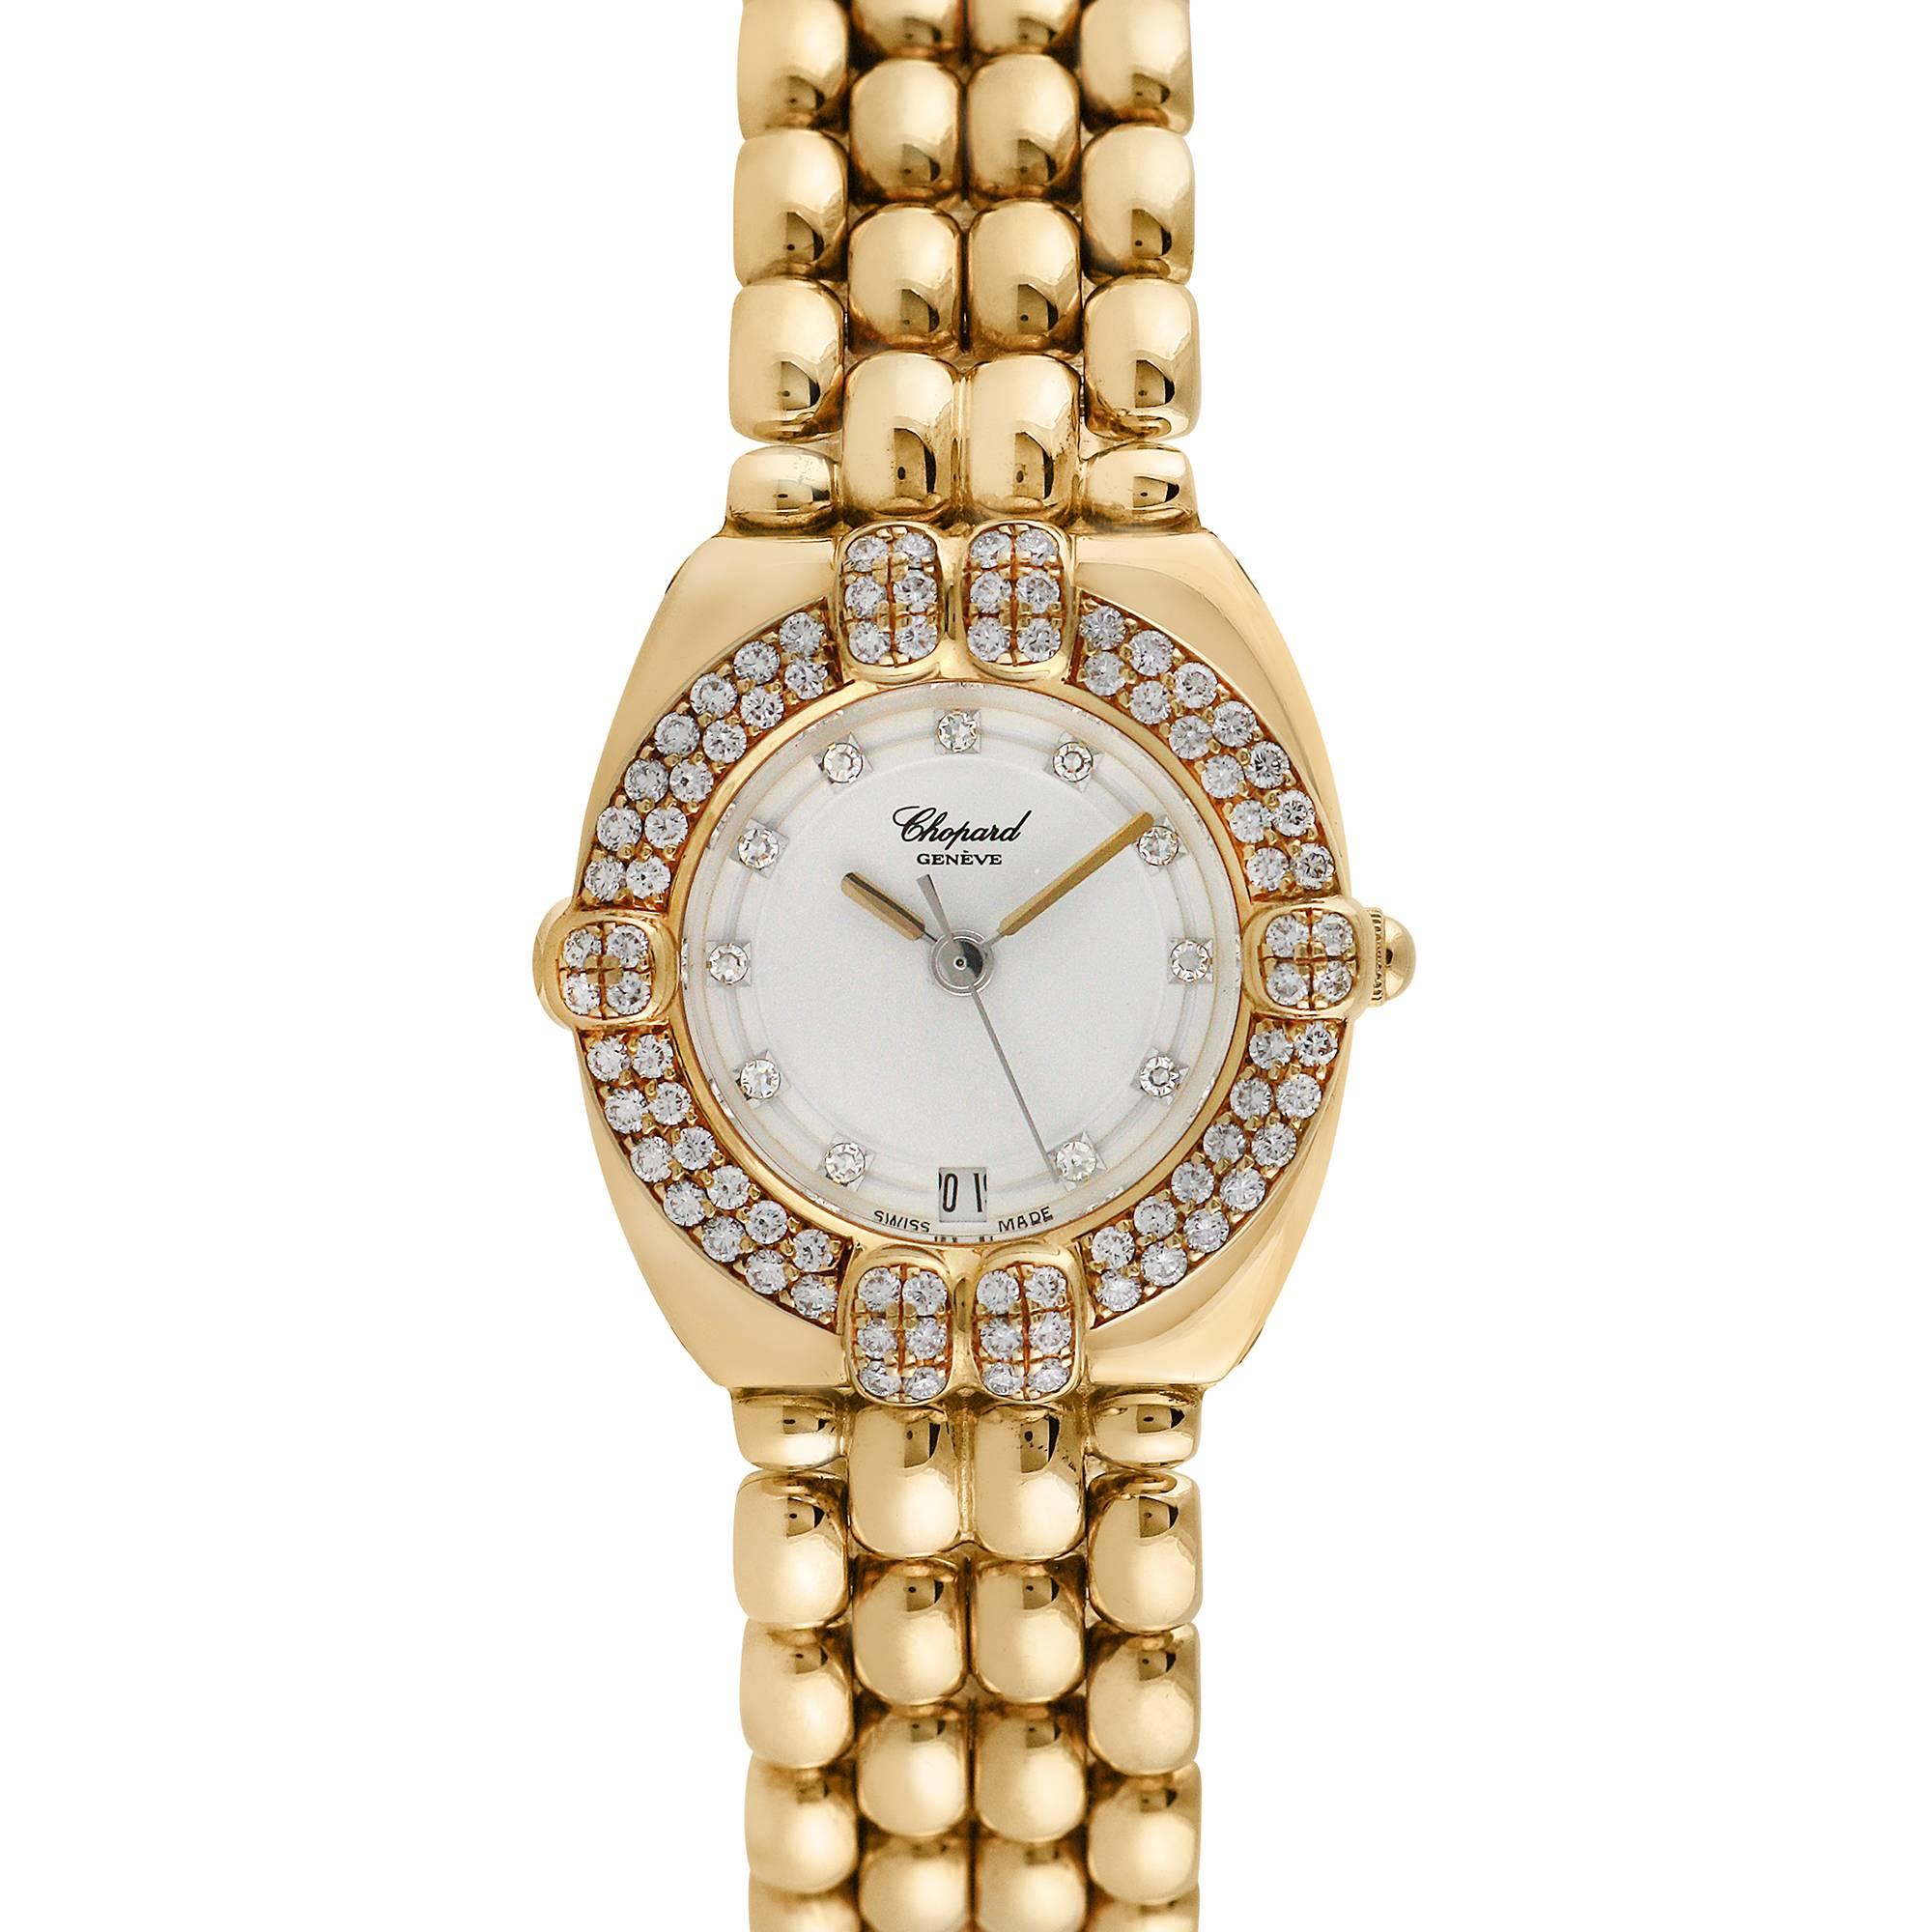 Chopard Gstaad 18K Yellow Gold Ladies Wristwatch, Ref 325120-11, Unworn